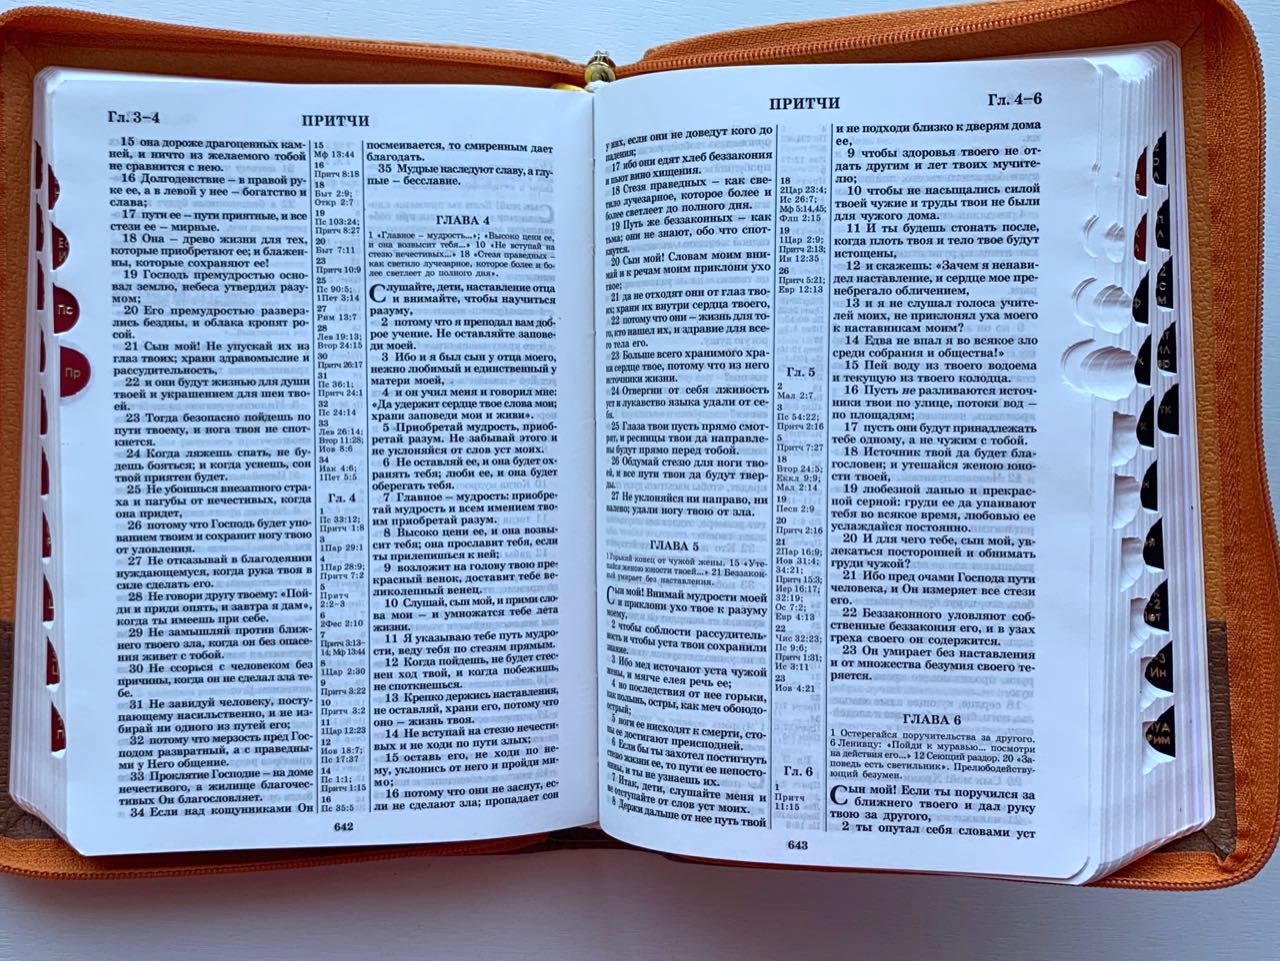 БИБЛИЯ 046DTzti формат, переплет из искусственной кожи на молнии с индексами, надпись серебром "Библия", цвет черный/коричневый вертикальный, средний формат, 132*182 мм, цветные карты, шрифт 12 кегель